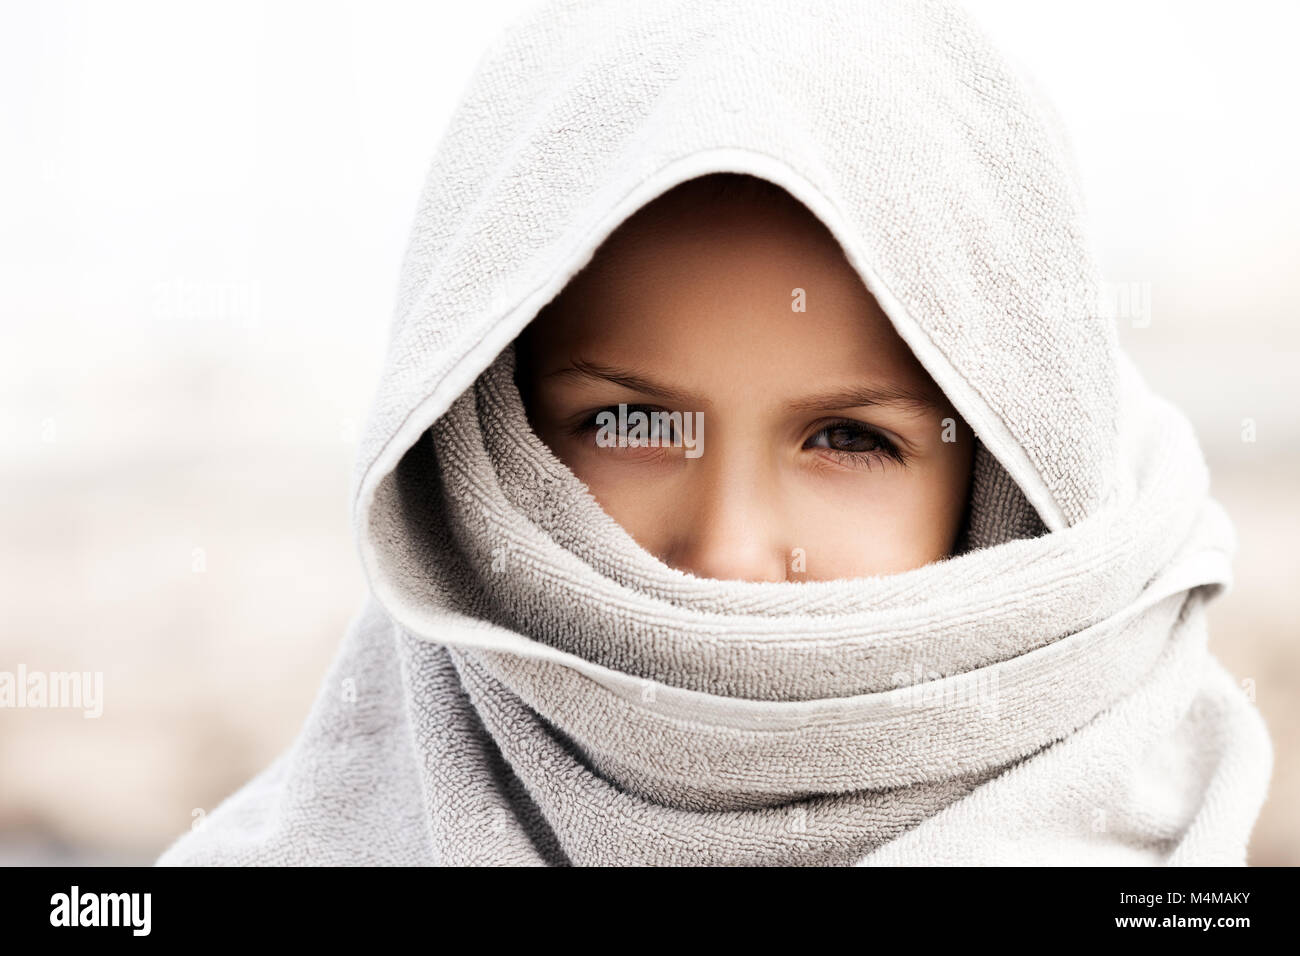 Niño pequeño muchacho vistiendo ropa estilo burka arábiga Foto de stock